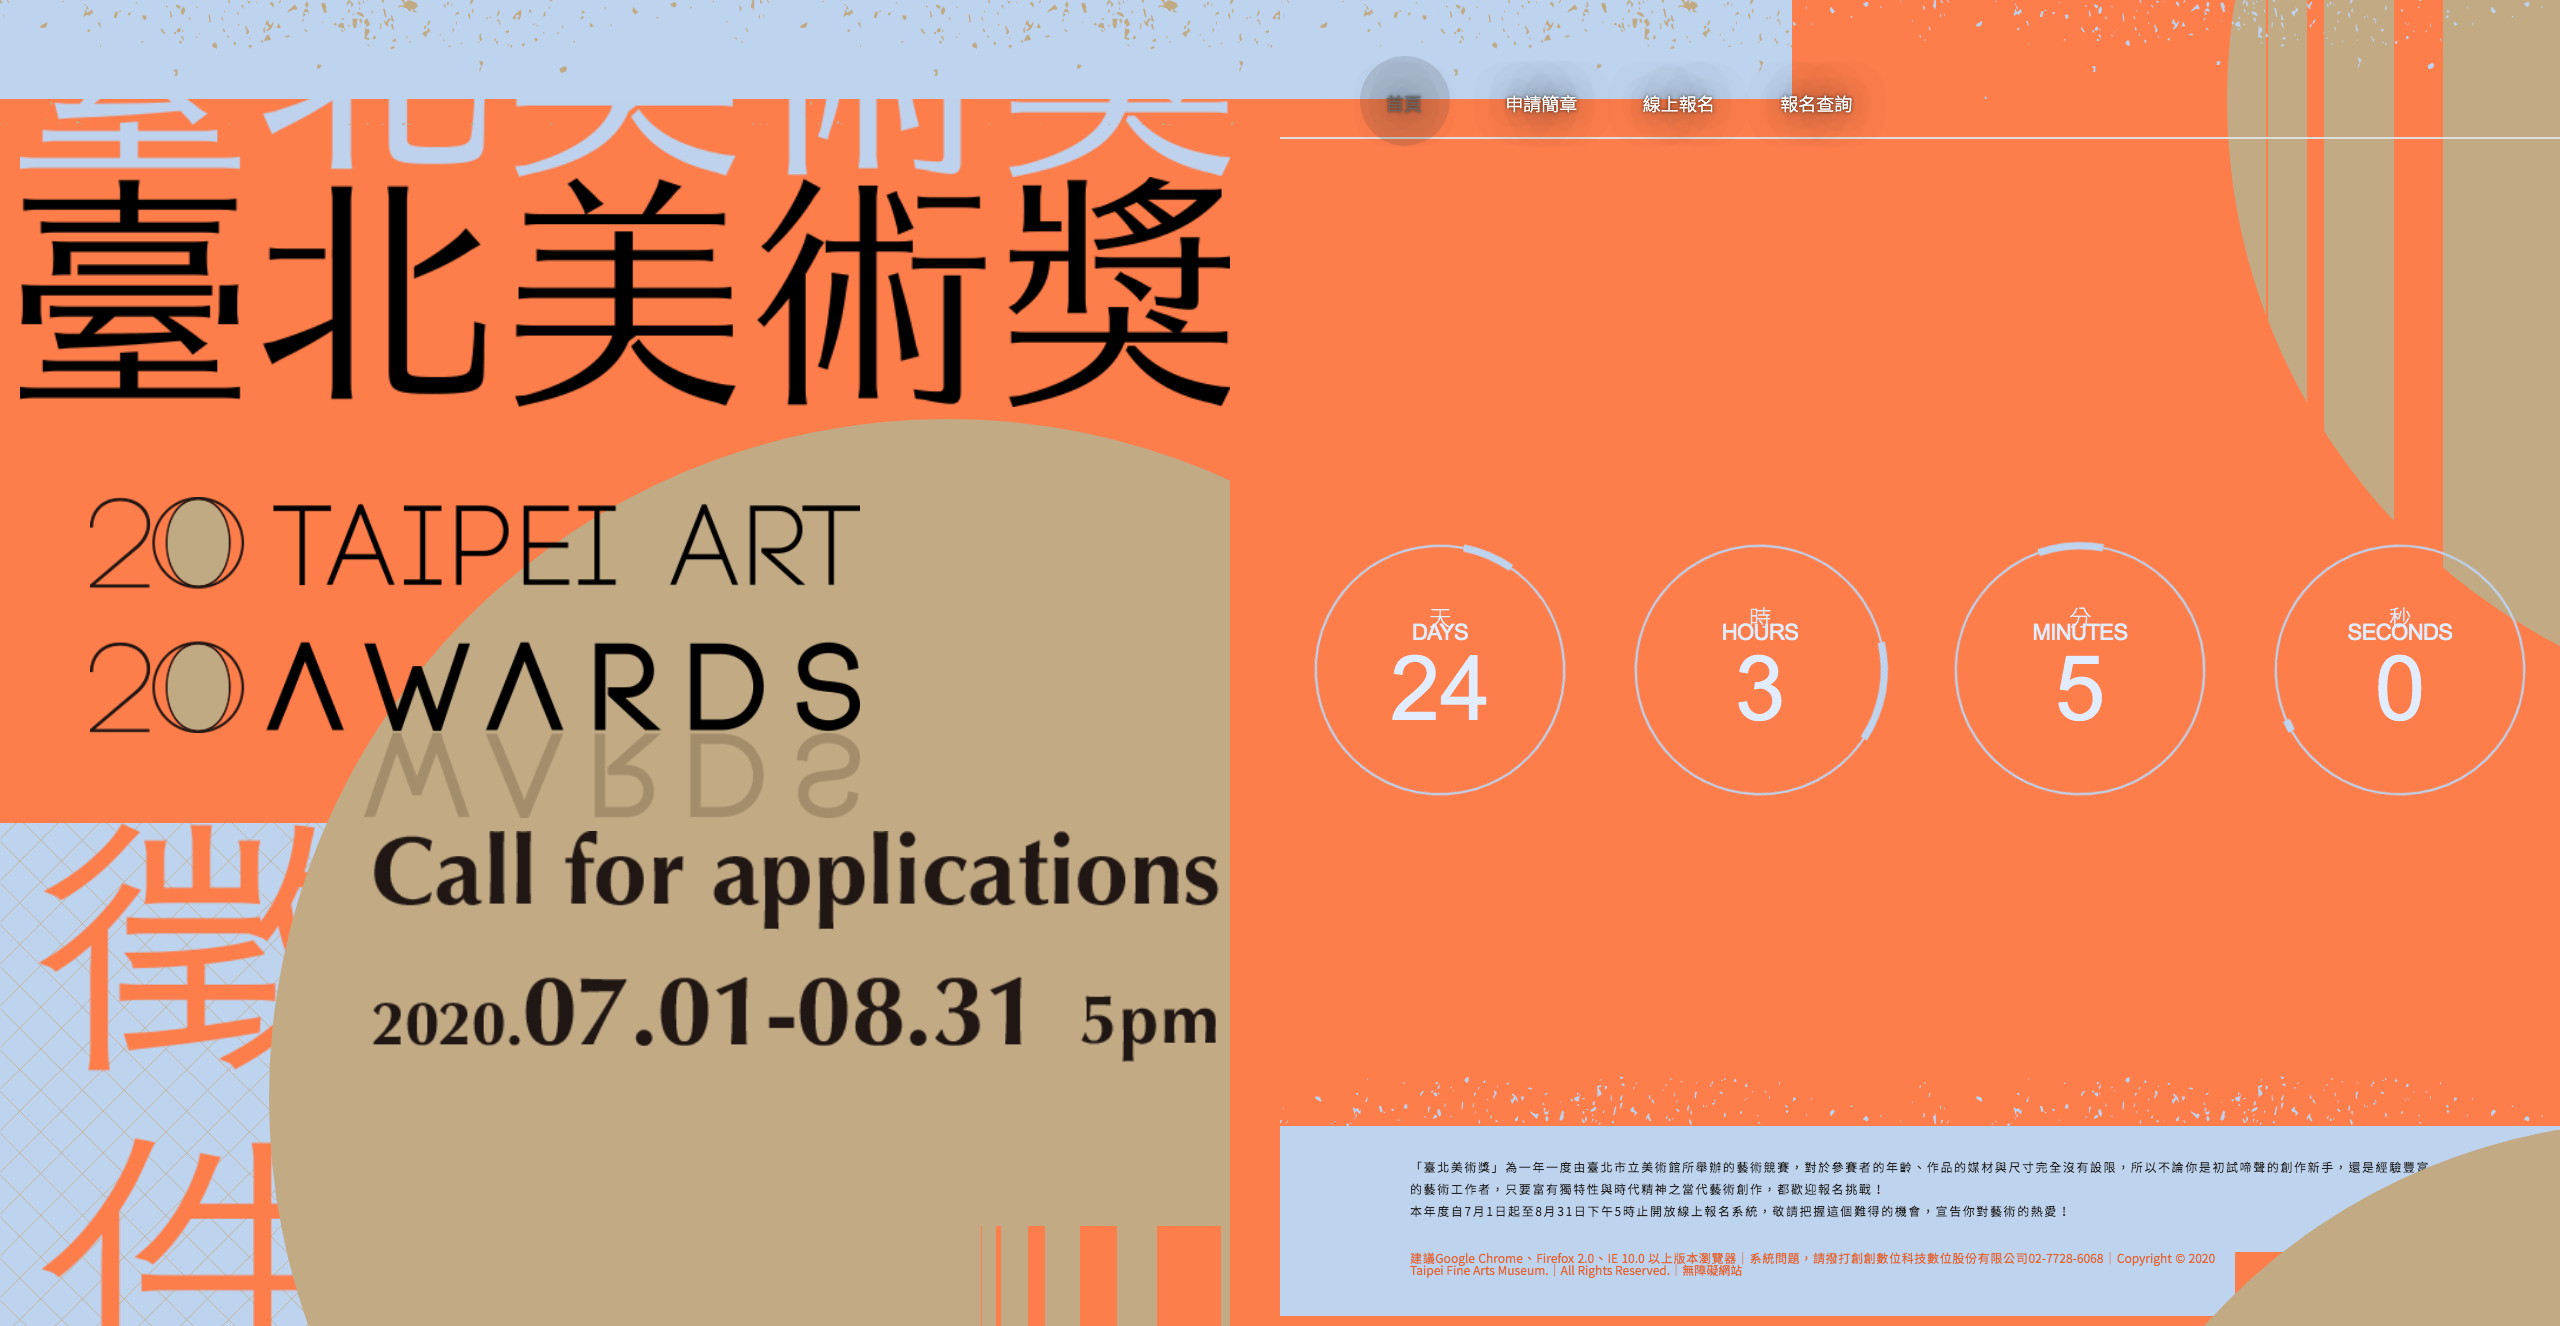 Source: Taipei Art Awards